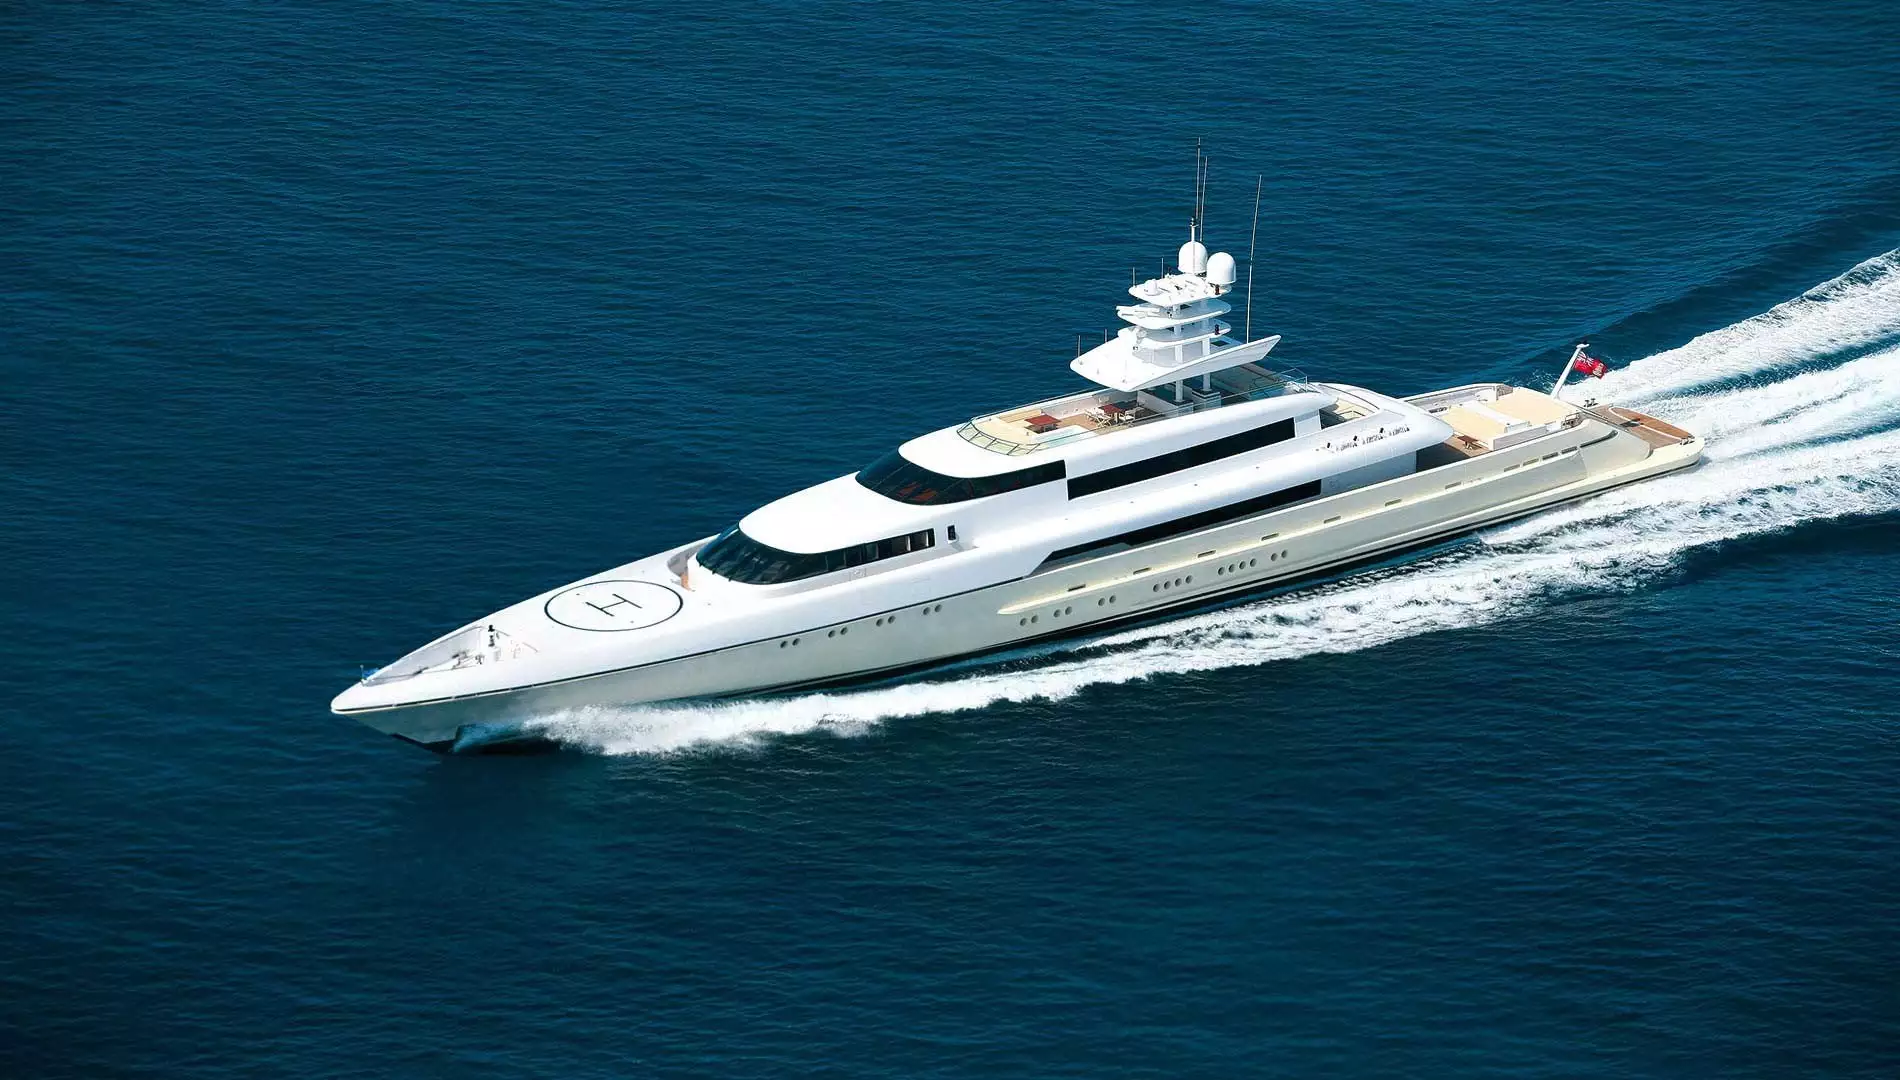 yacht Libellule - Silver Yachts - 2009 - Sergey Brin